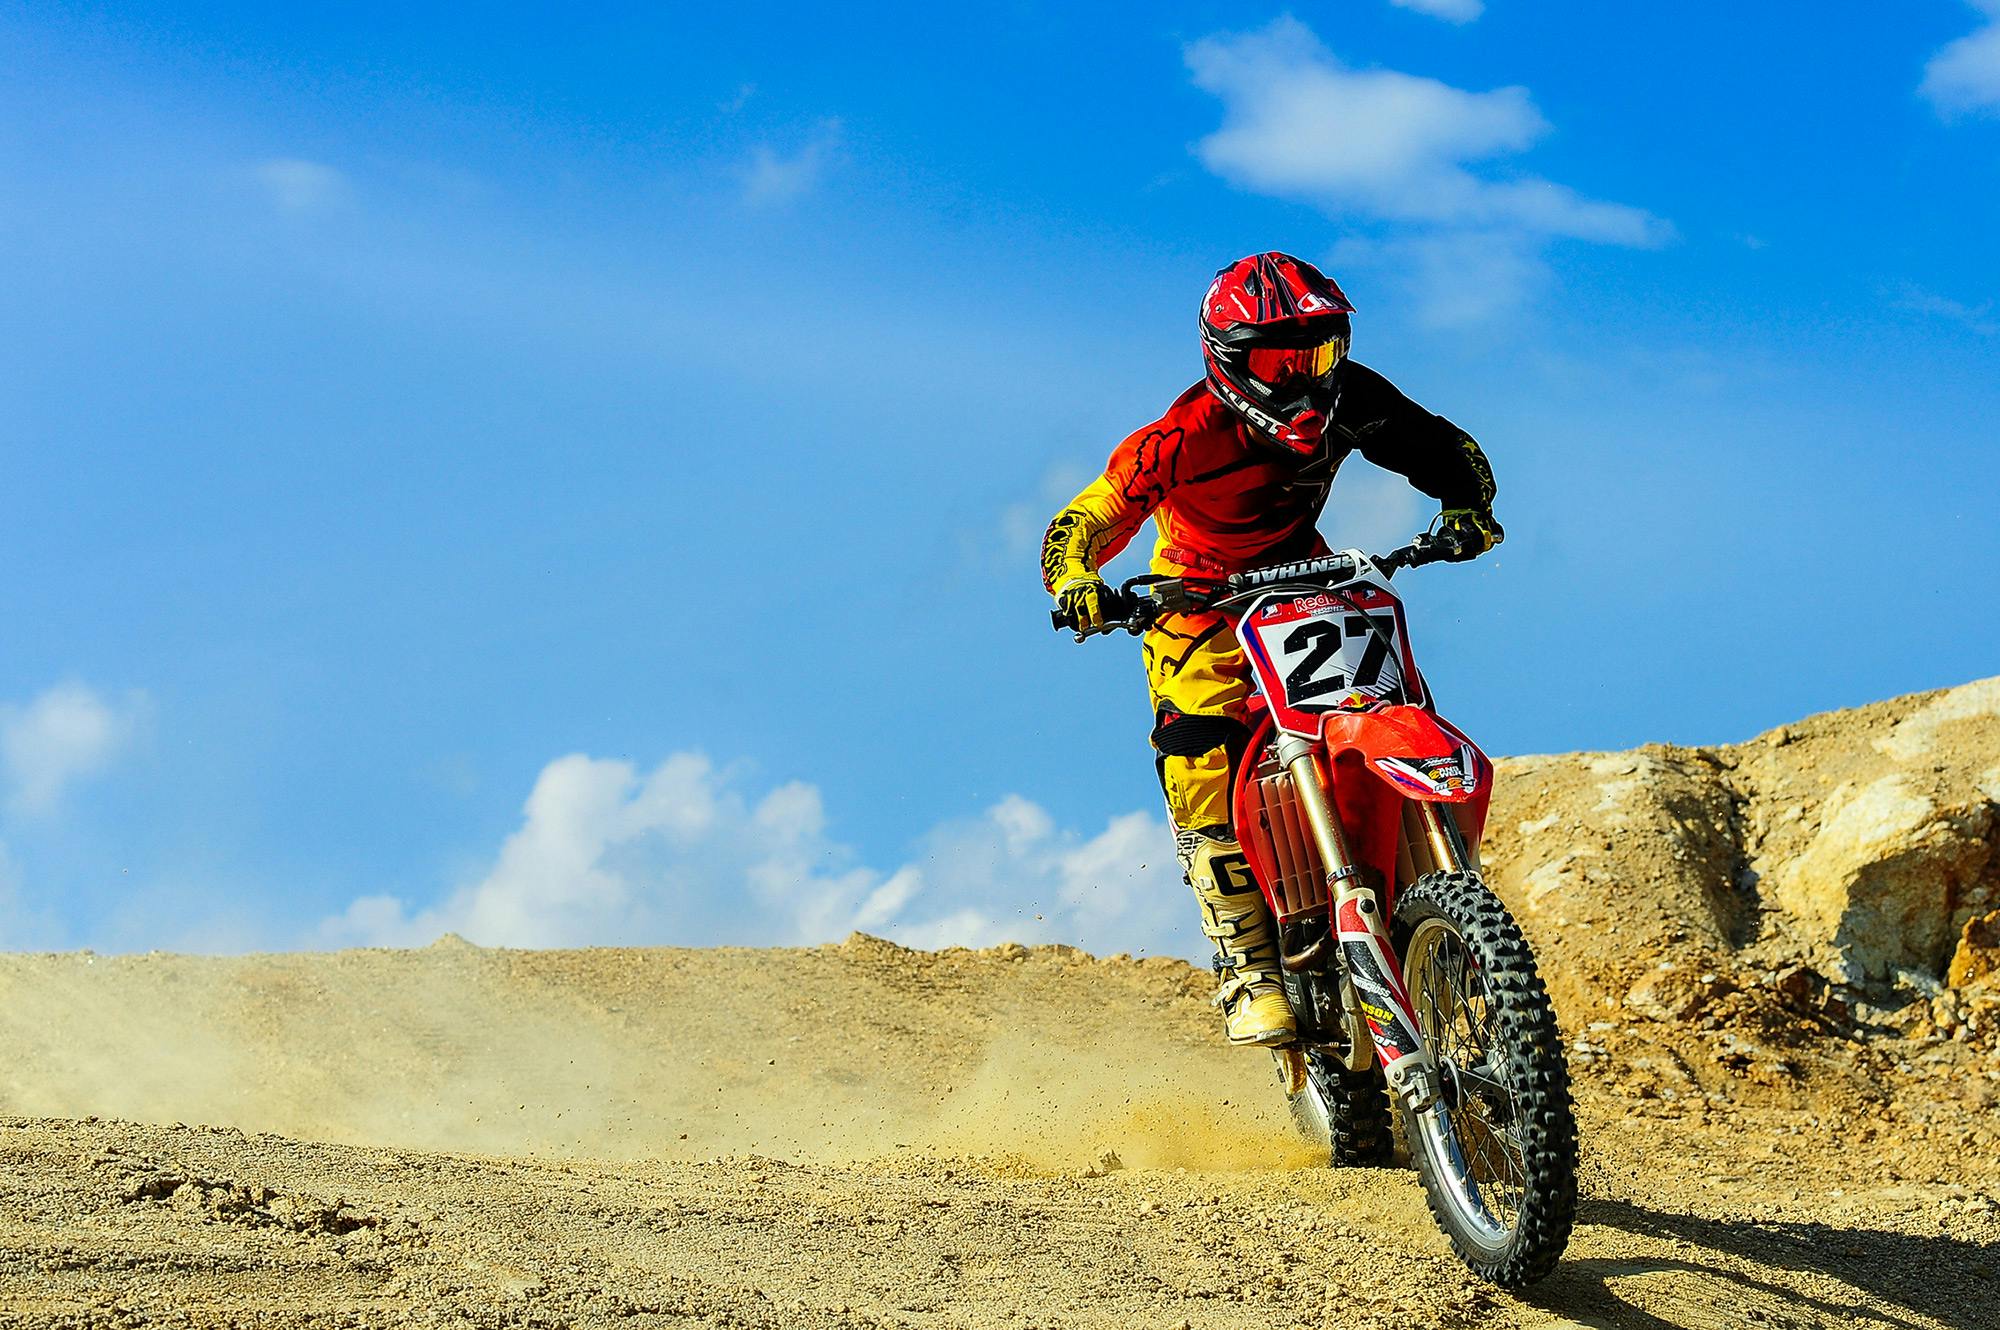 Un motocycliste en tenue rouge et jaune, portant le numéro 27, pilotant une moto de cross rouge sur une piste sablonneuse sous un ciel bleu dégagé.